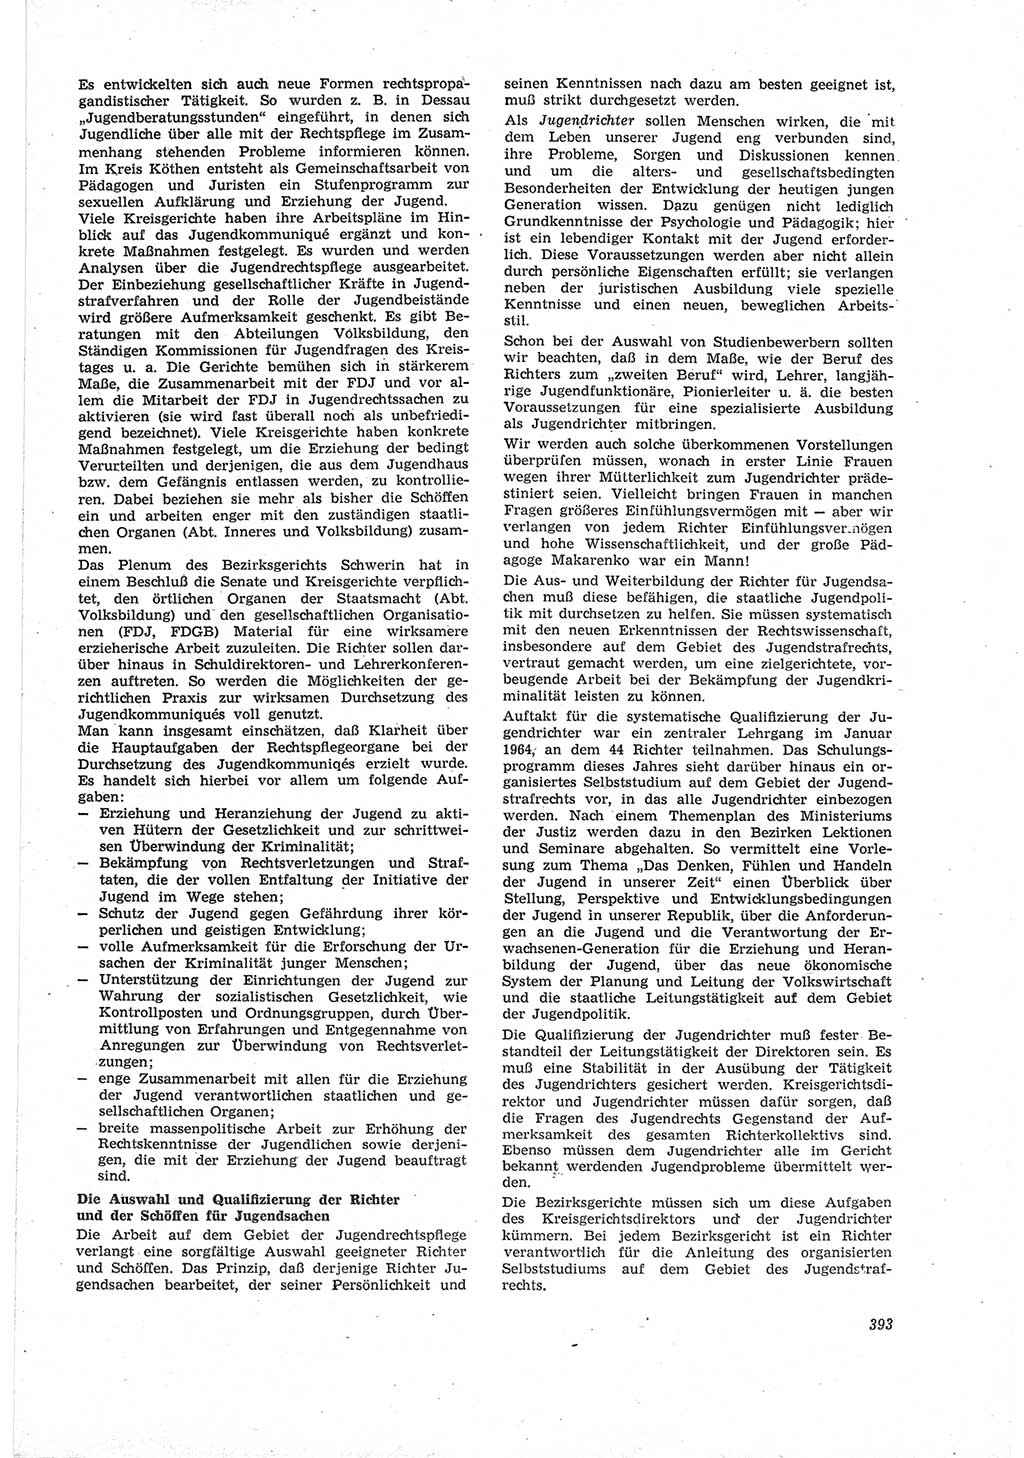 Neue Justiz (NJ), Zeitschrift für Recht und Rechtswissenschaft [Deutsche Demokratische Republik (DDR)], 18. Jahrgang 1964, Seite 393 (NJ DDR 1964, S. 393)